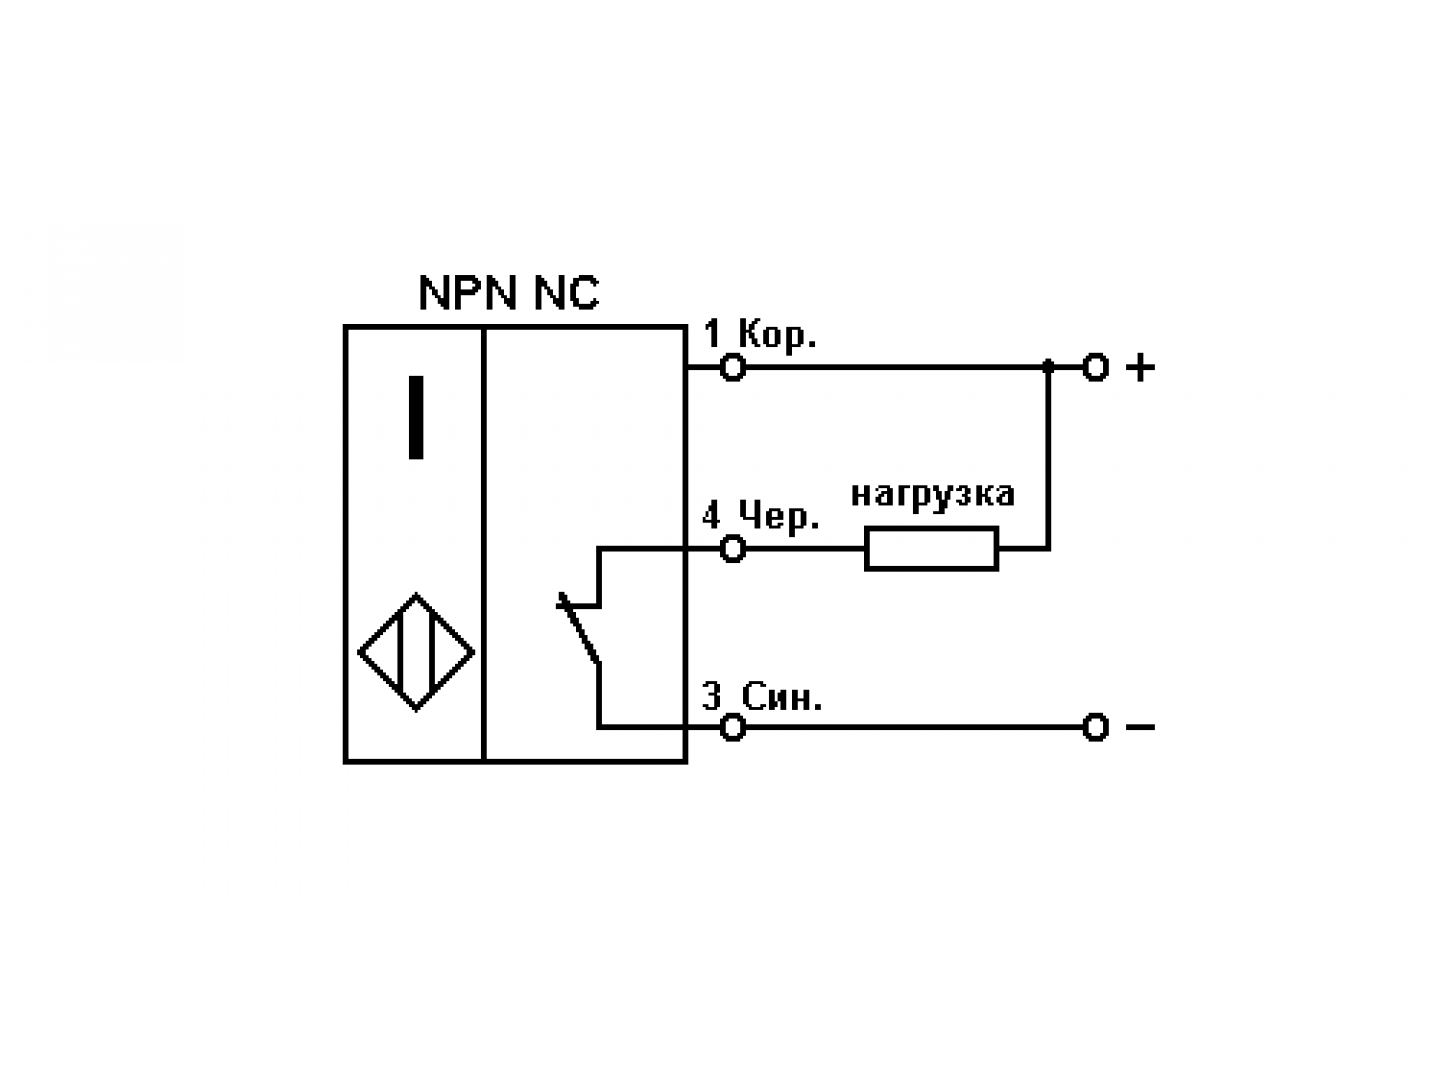 Датчик вход выход. Индуктивный концевой датчик схема подключения. Датчик SN-04n. Емкостной бесконтактный датчик схема подключения. Двухпроводный индуктивный датчик схема подключения.